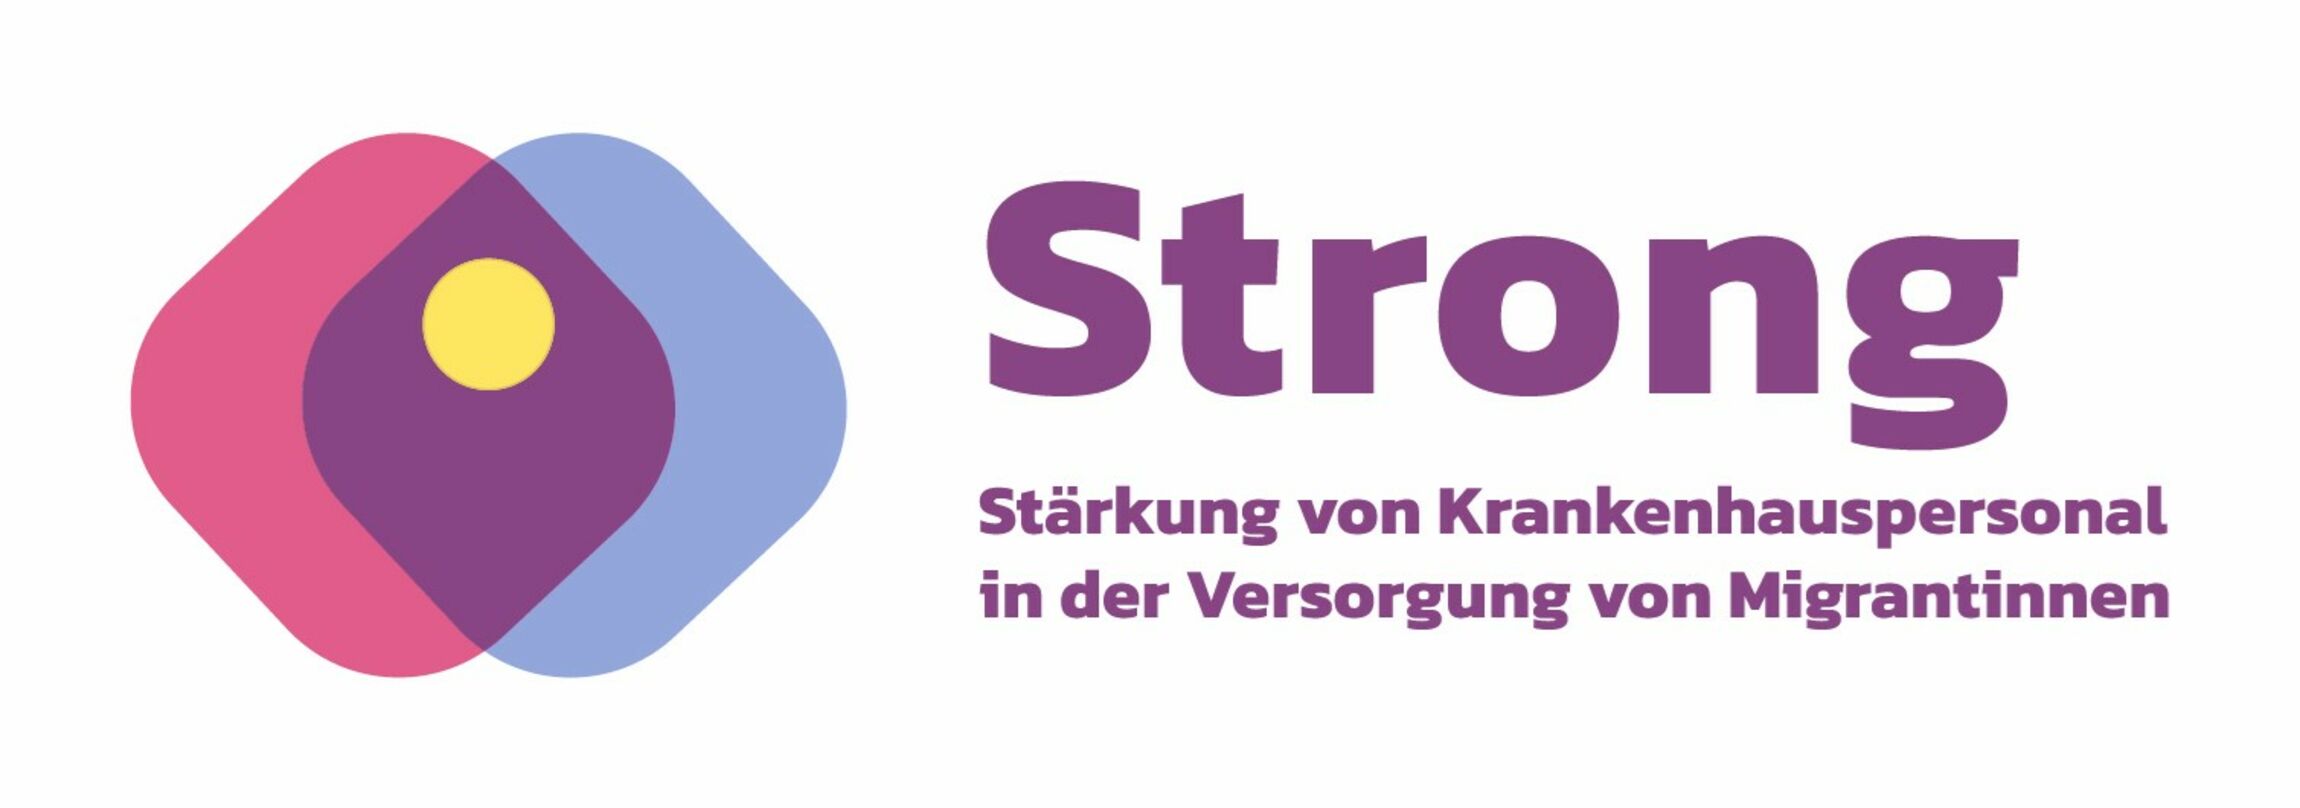 Logo Strong